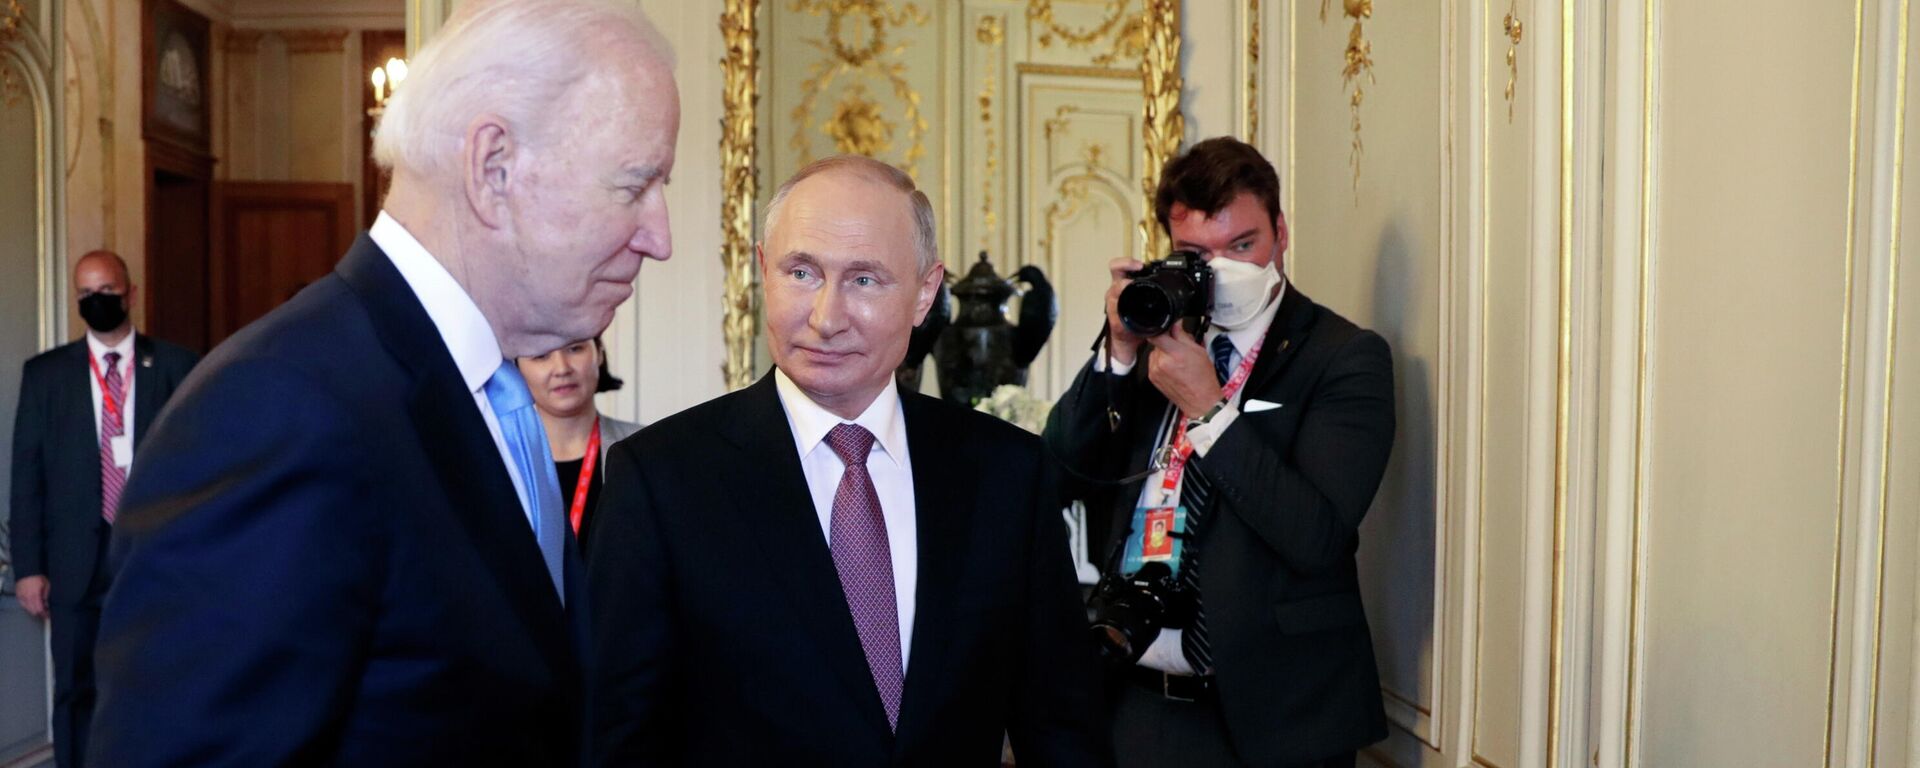 Joe Biden, presidente de EEUU y Vladímir Putin, presidente de Rusia - Sputnik Mundo, 1920, 16.06.2021